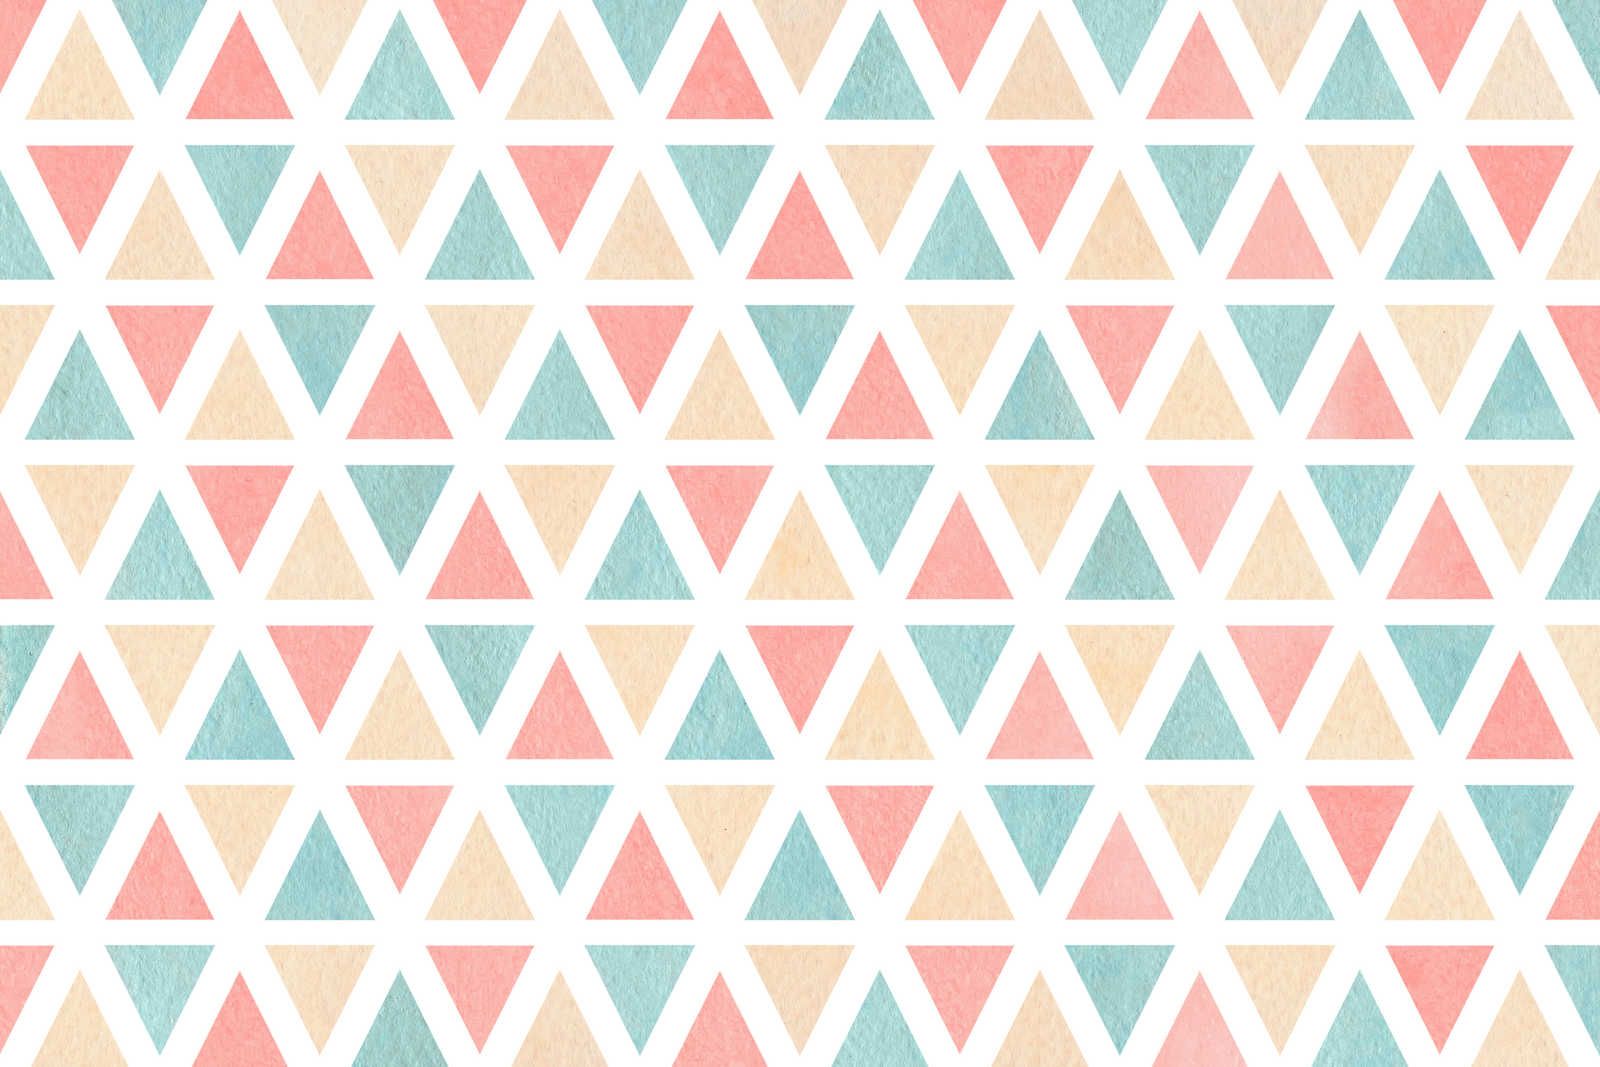             Lienzo con motivo gráfico de triángulos de colores - 90 cm x 60 cm
        